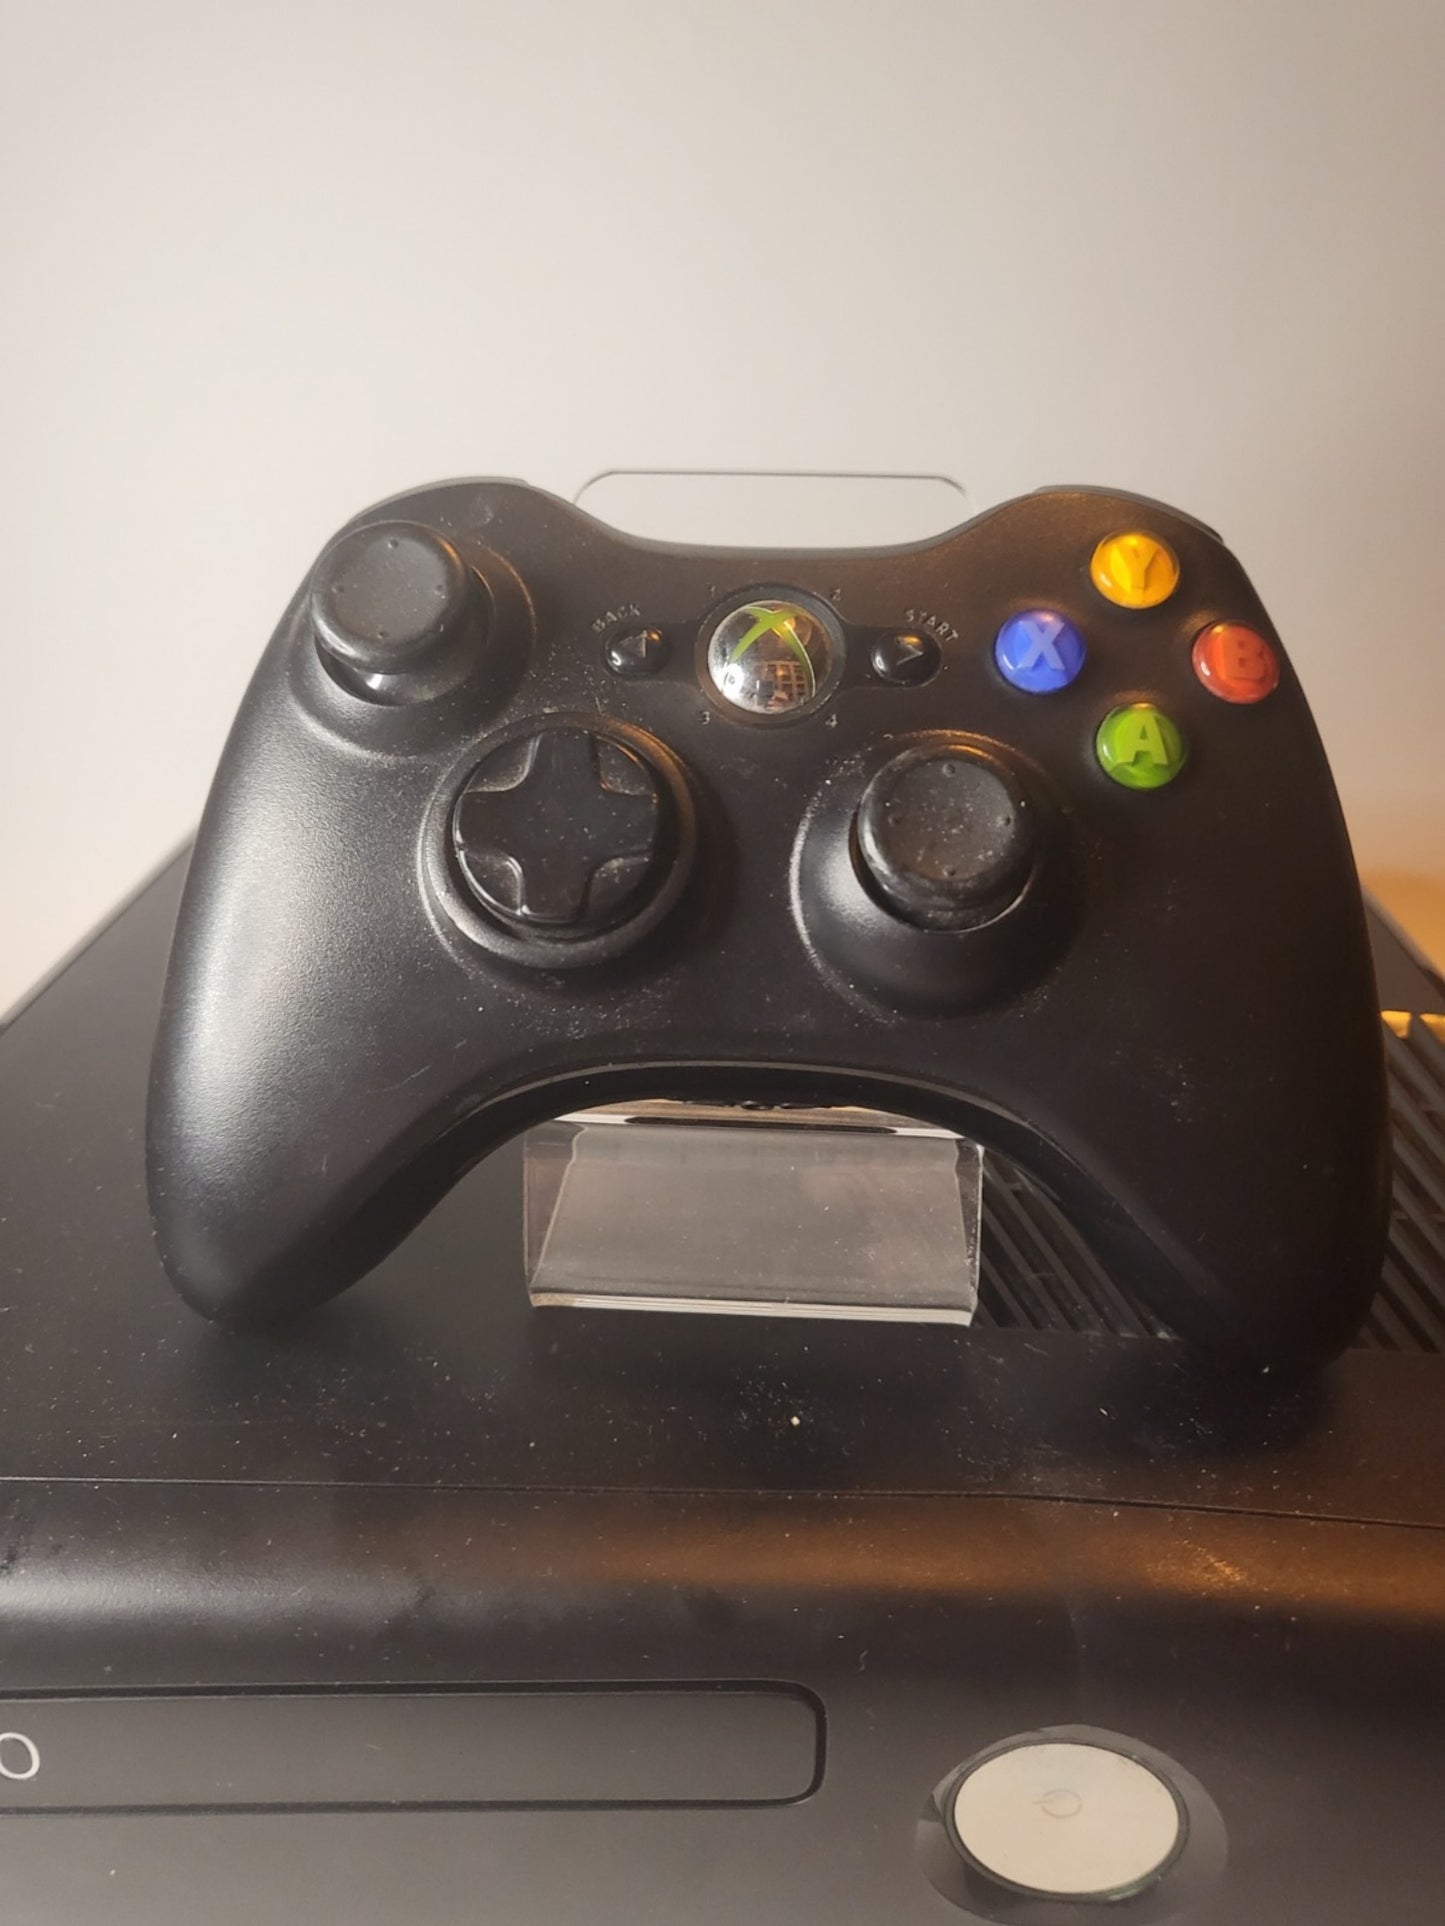 Zwarte Xbox 360 Slim 4gb met controller en alle kabels